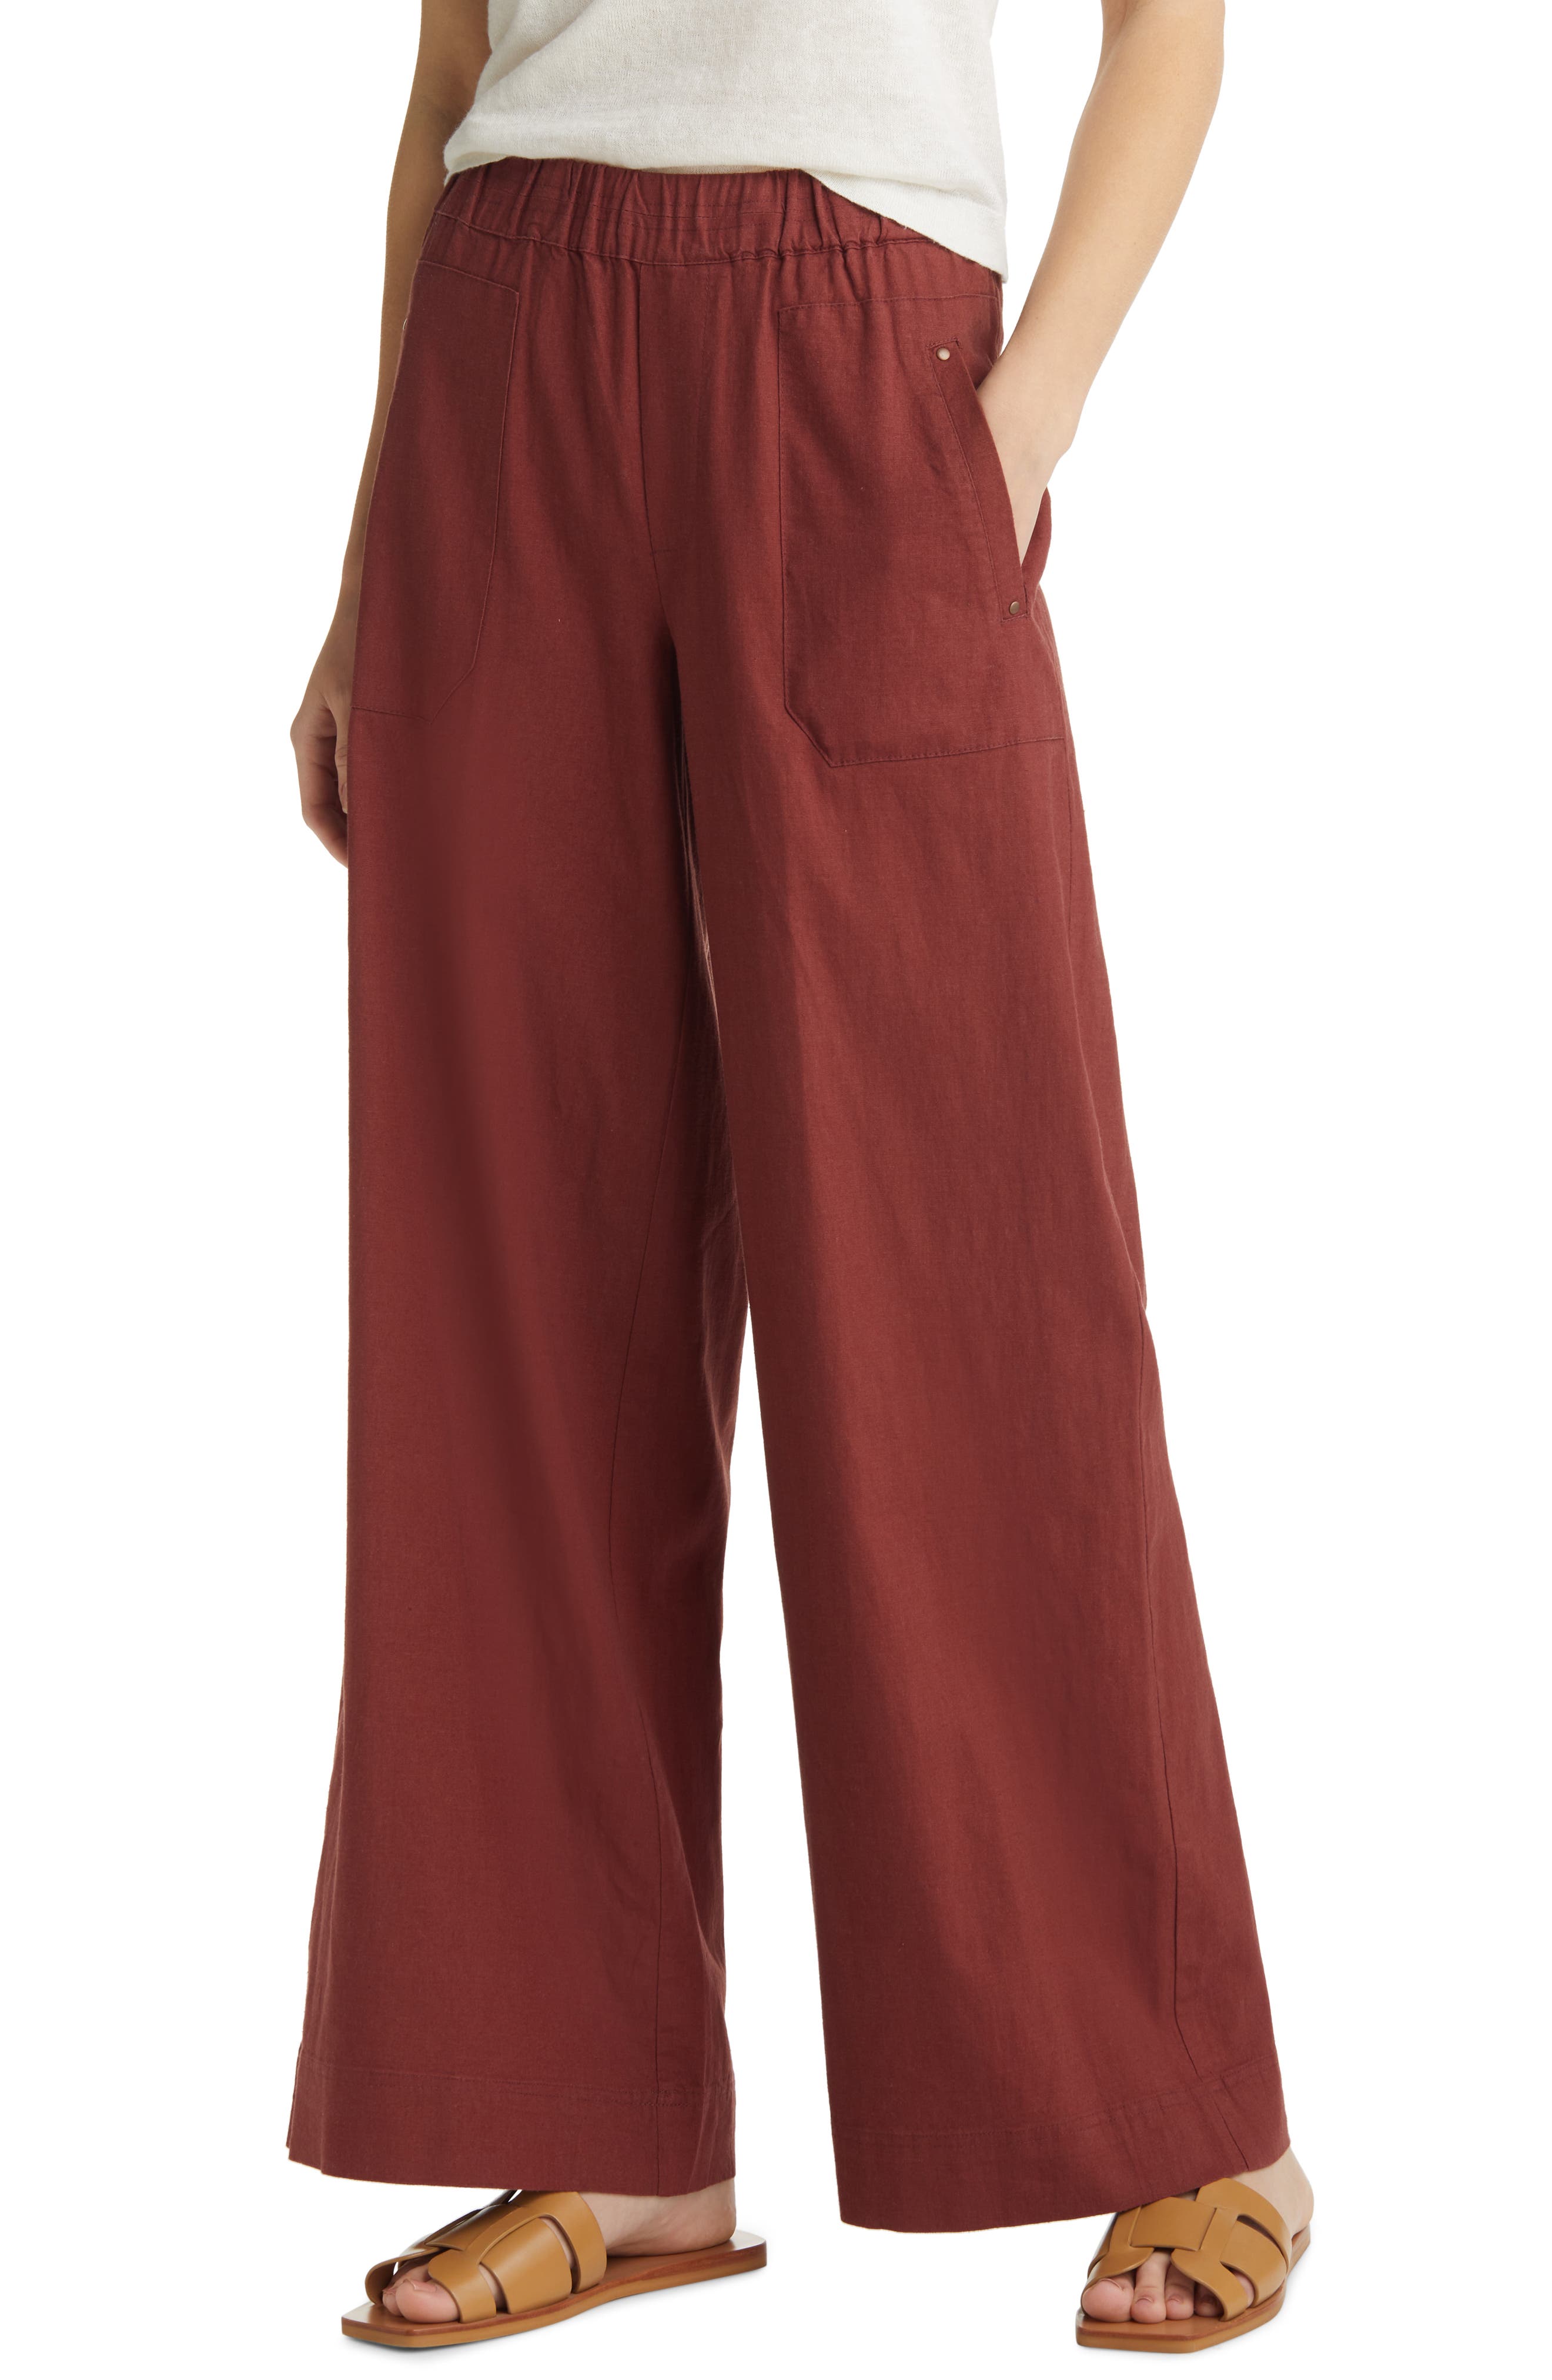 Linen culottes pants  Terracotta linen pants  Woman's linen pants  Loose pants  Short flared pants  Soft linen trousers